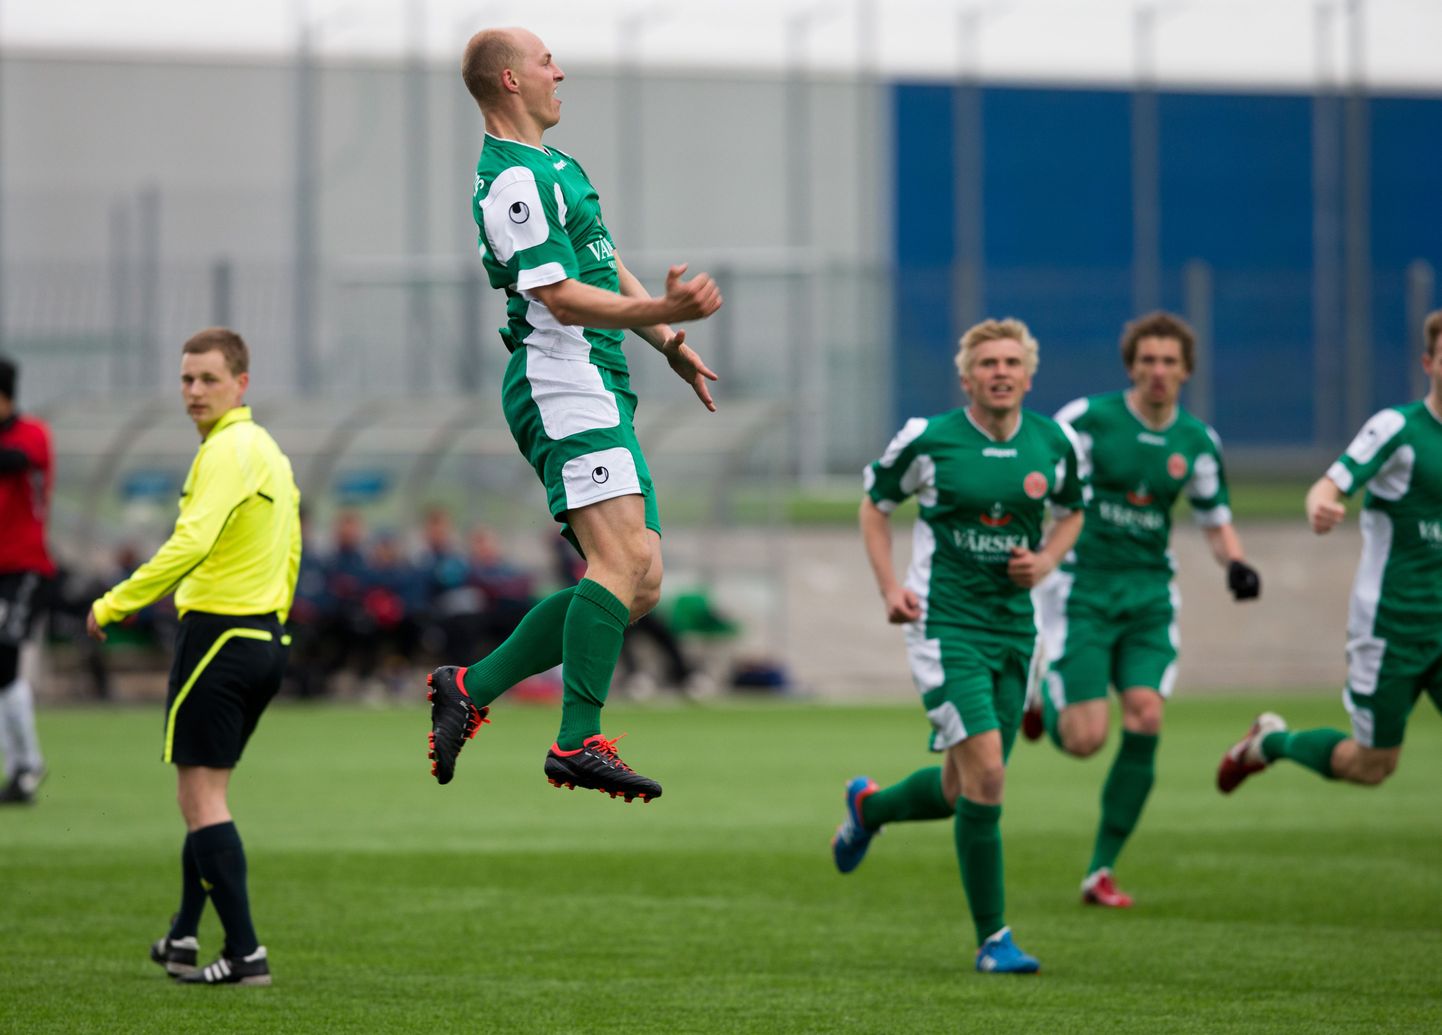 Eesti jalgpalli karikavõistluste poolfinaalis olid vastamisi tugevuselt kolmanda liiga tiimid HÜJK Emmaste ning Tartu FC Santos. Santos võttis 3:1 võidu ja tagas sellega ka koha eurosarjas.